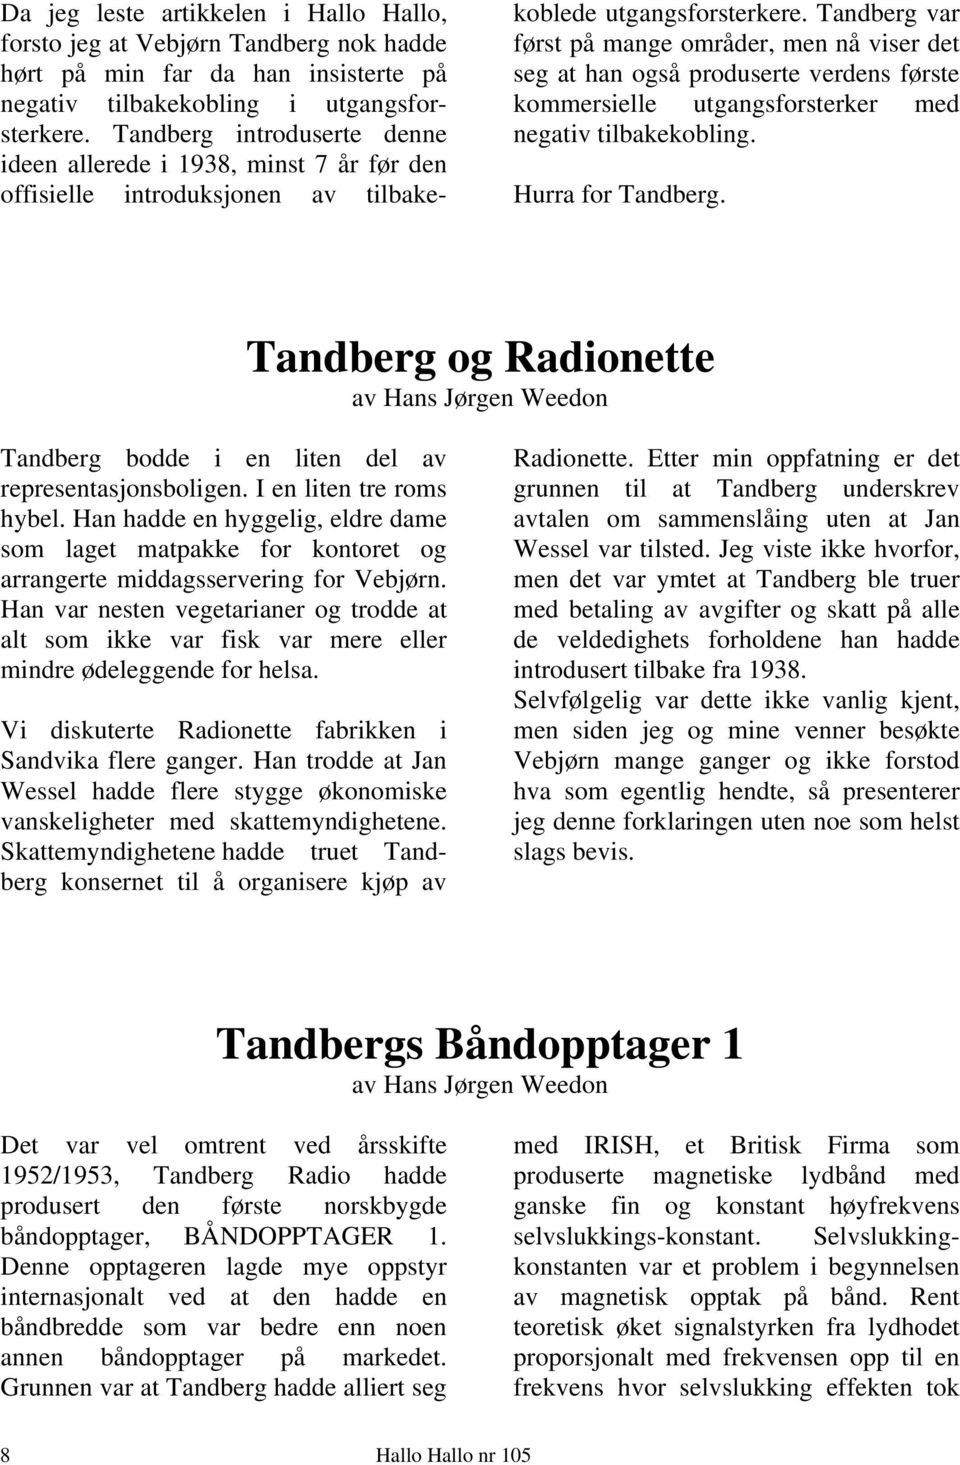 Tandberg var først på mange områder, men nå viser det seg at han også produserte verdens første kommersielle utgangsforsterker med negativ tilbakekobling. Hurra for Tandberg.